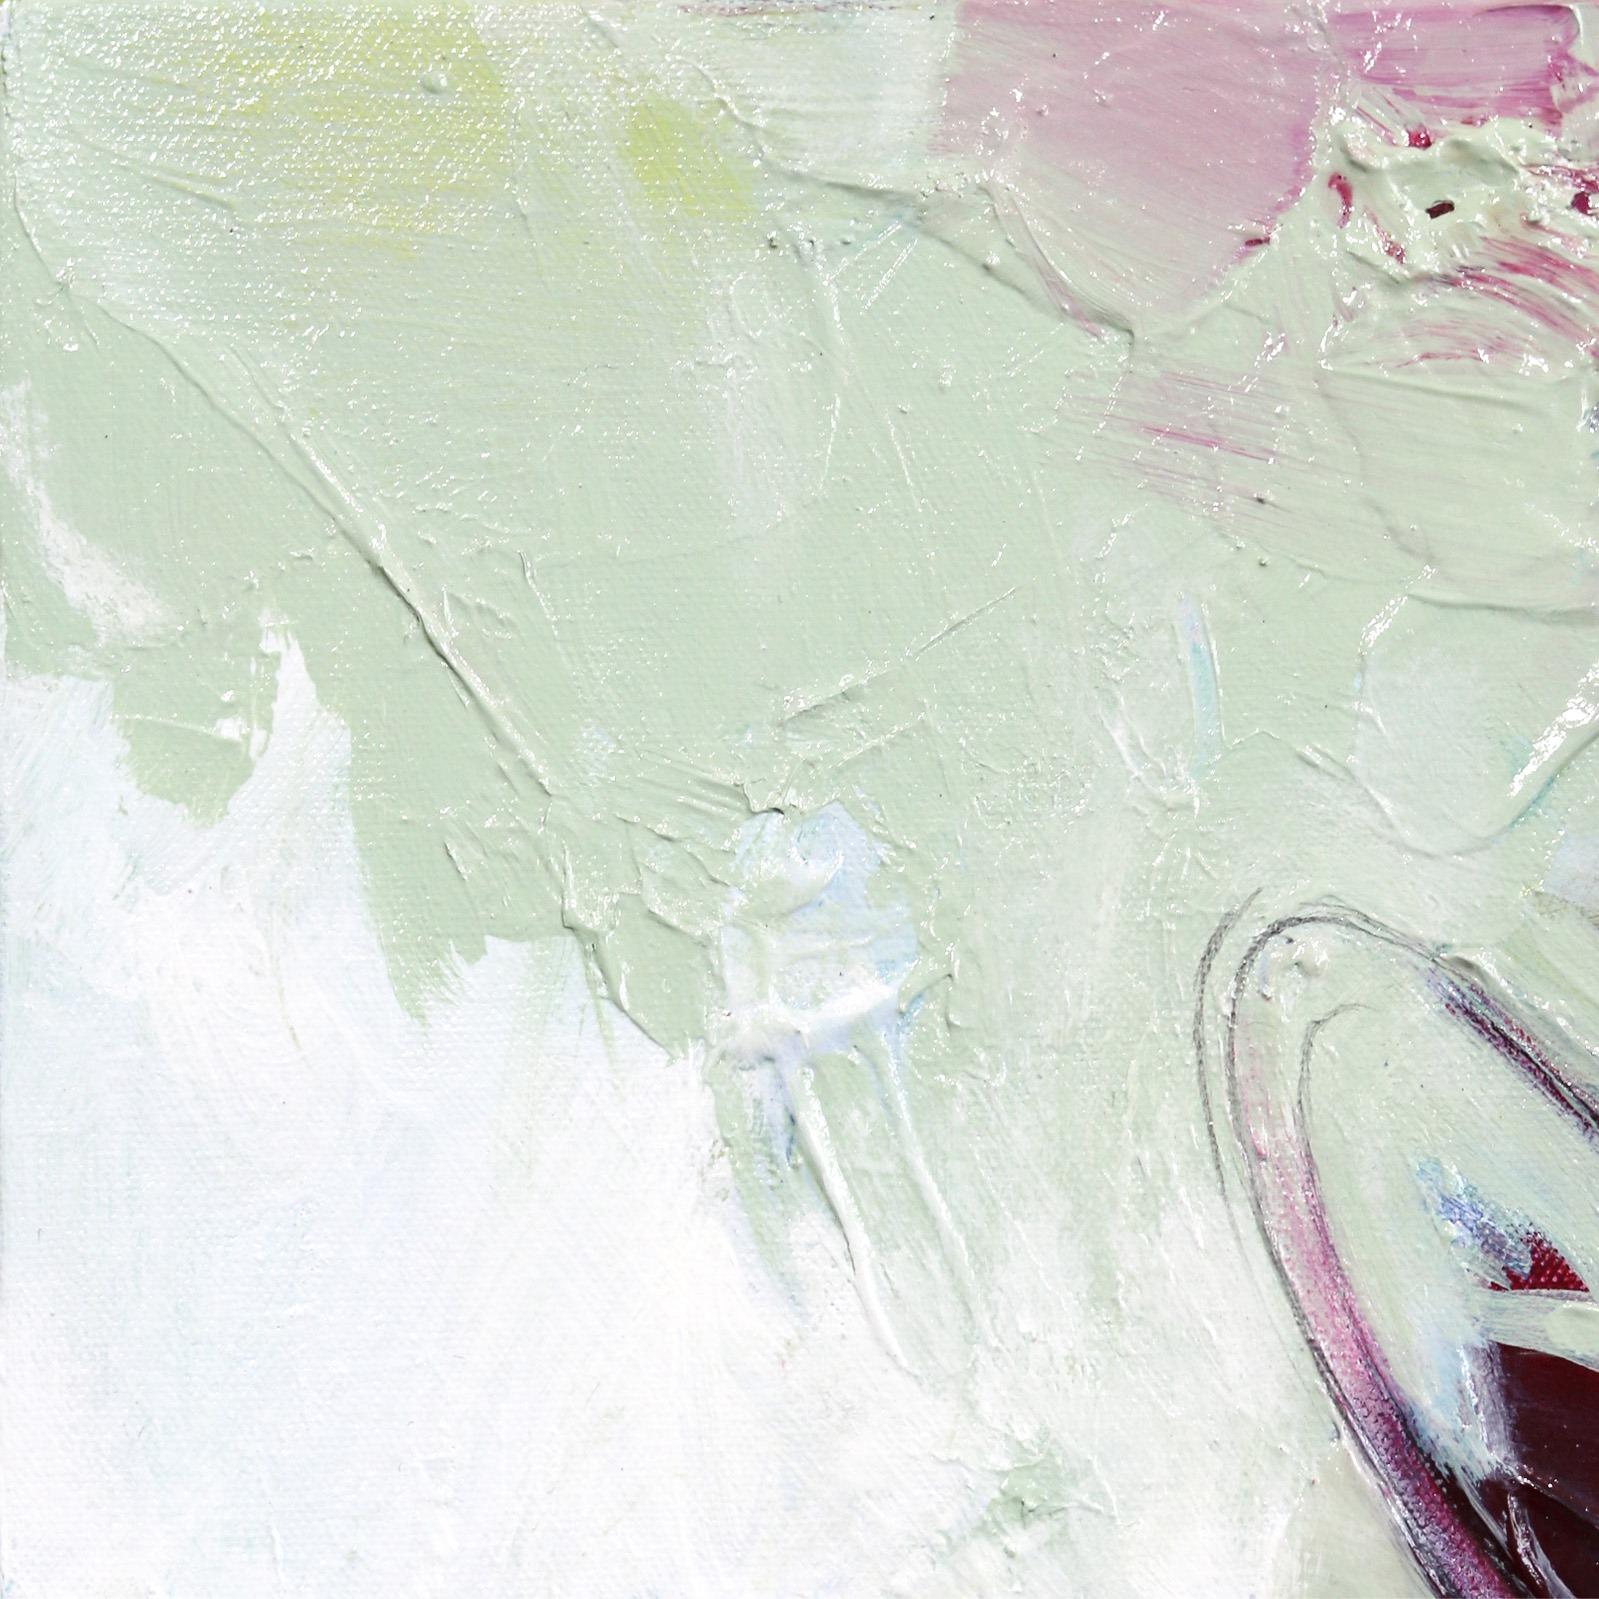 Edge Lit mit grünem Rand (Abstrakter Expressionismus), Painting, von Paul Kirley